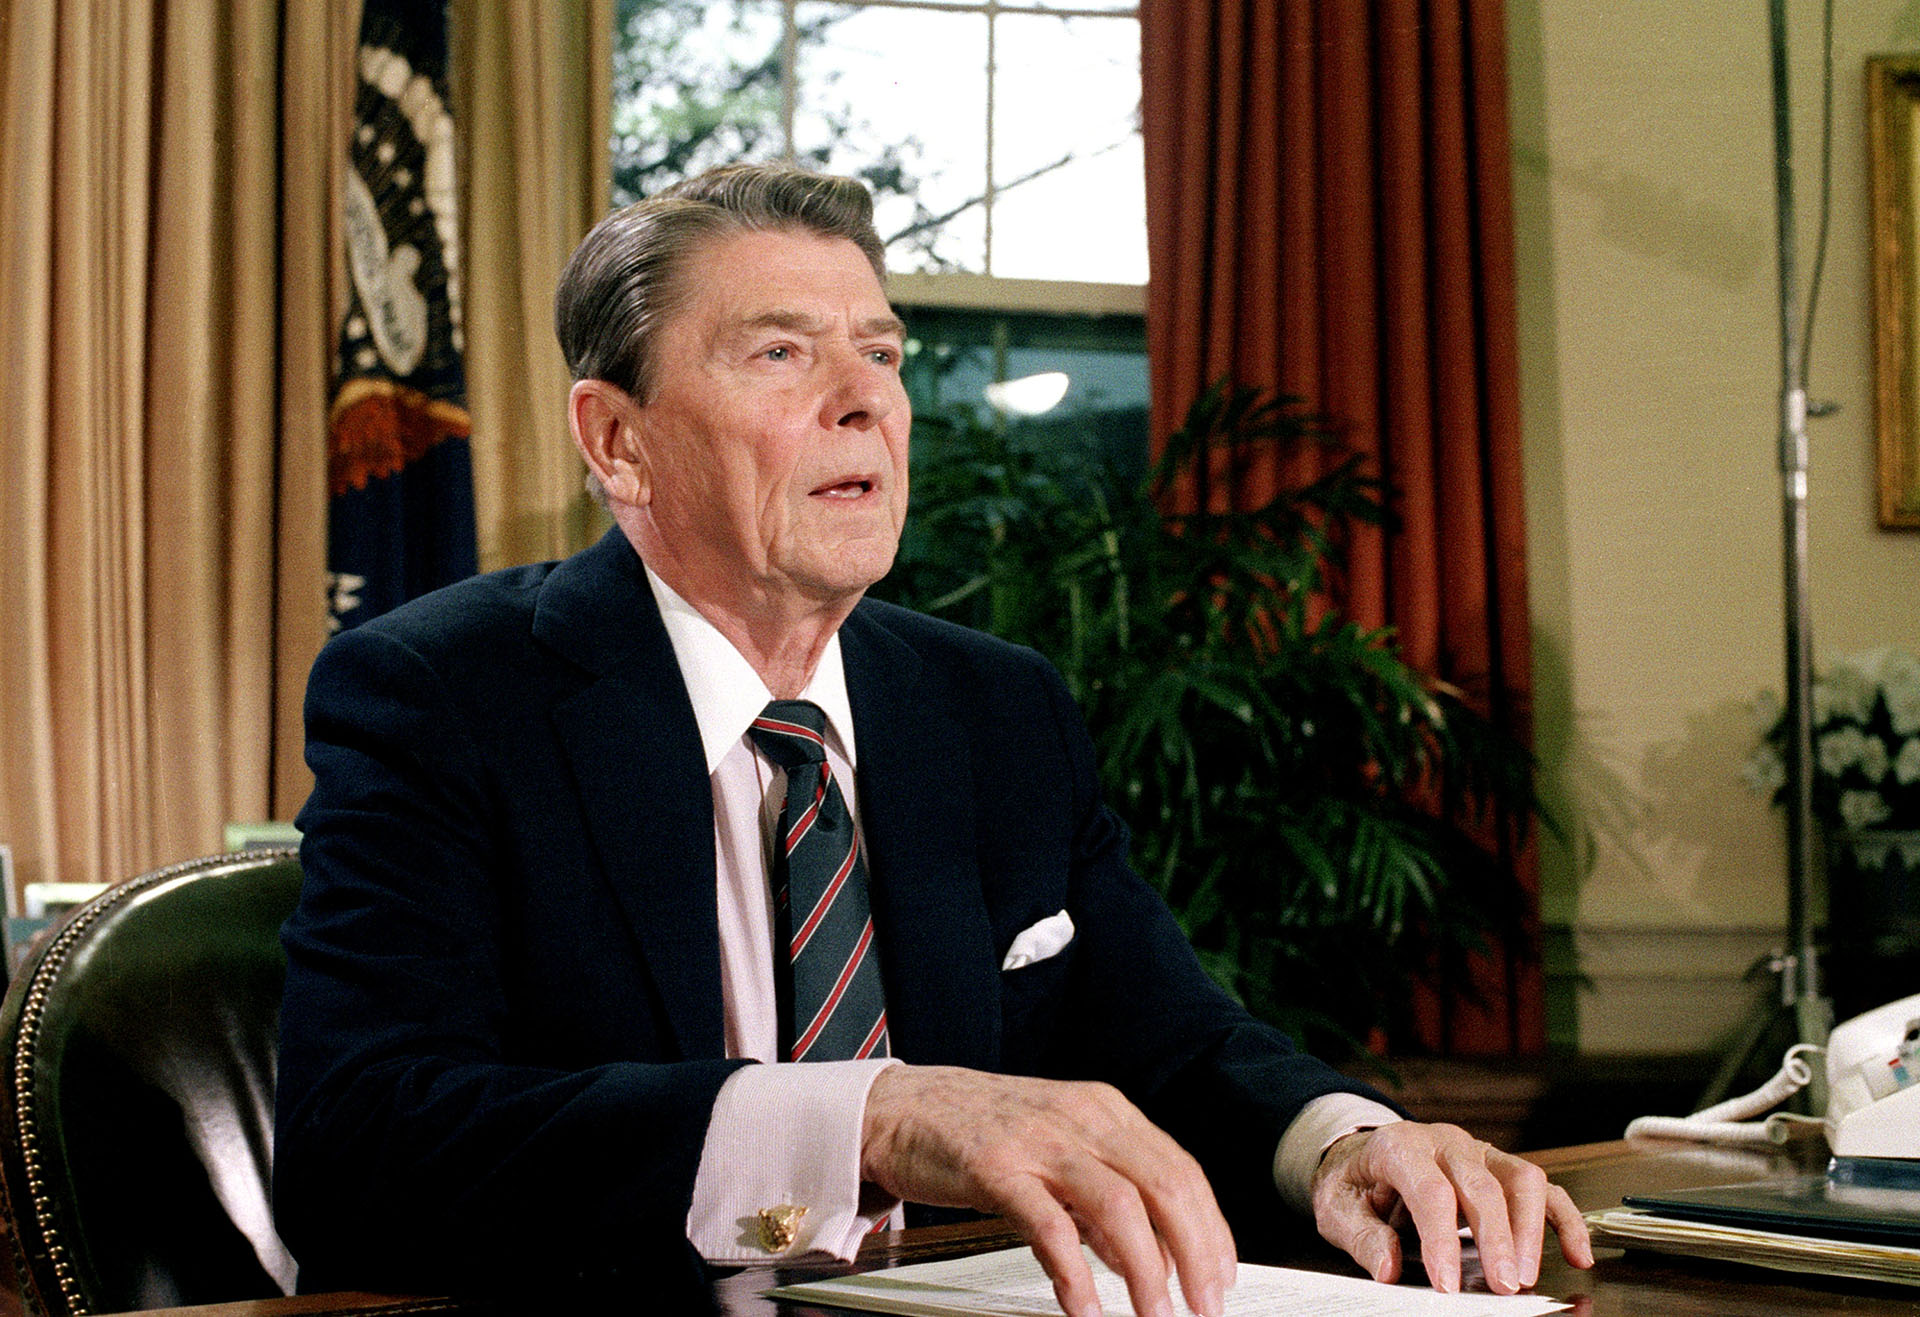 La presidencia republicana de Ronald Reagan bajó los impuestos con el fin de impulsar el crecimiento económico. (AP Photo/Dennis Cook, File)